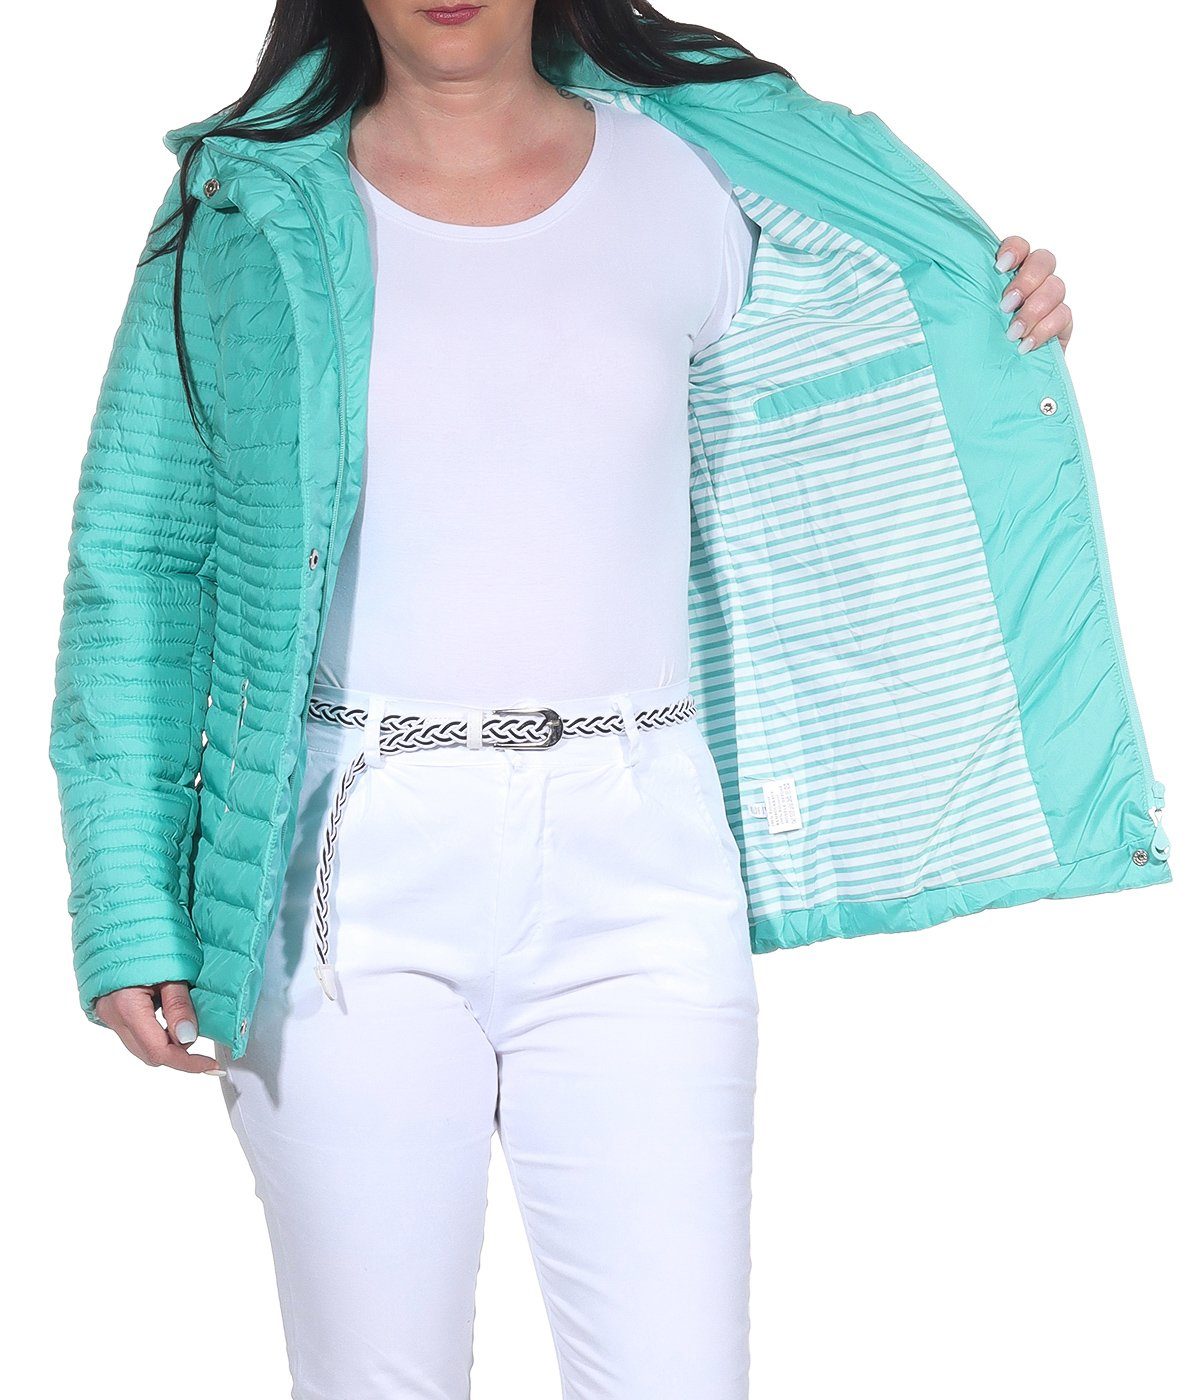 erhältlich, angenehm in leichte Aurela Damenmode auch Outdoor großen Übegrangsjacke Mint leichte Damen Größen Sommerjacke Steppjacke Jacke